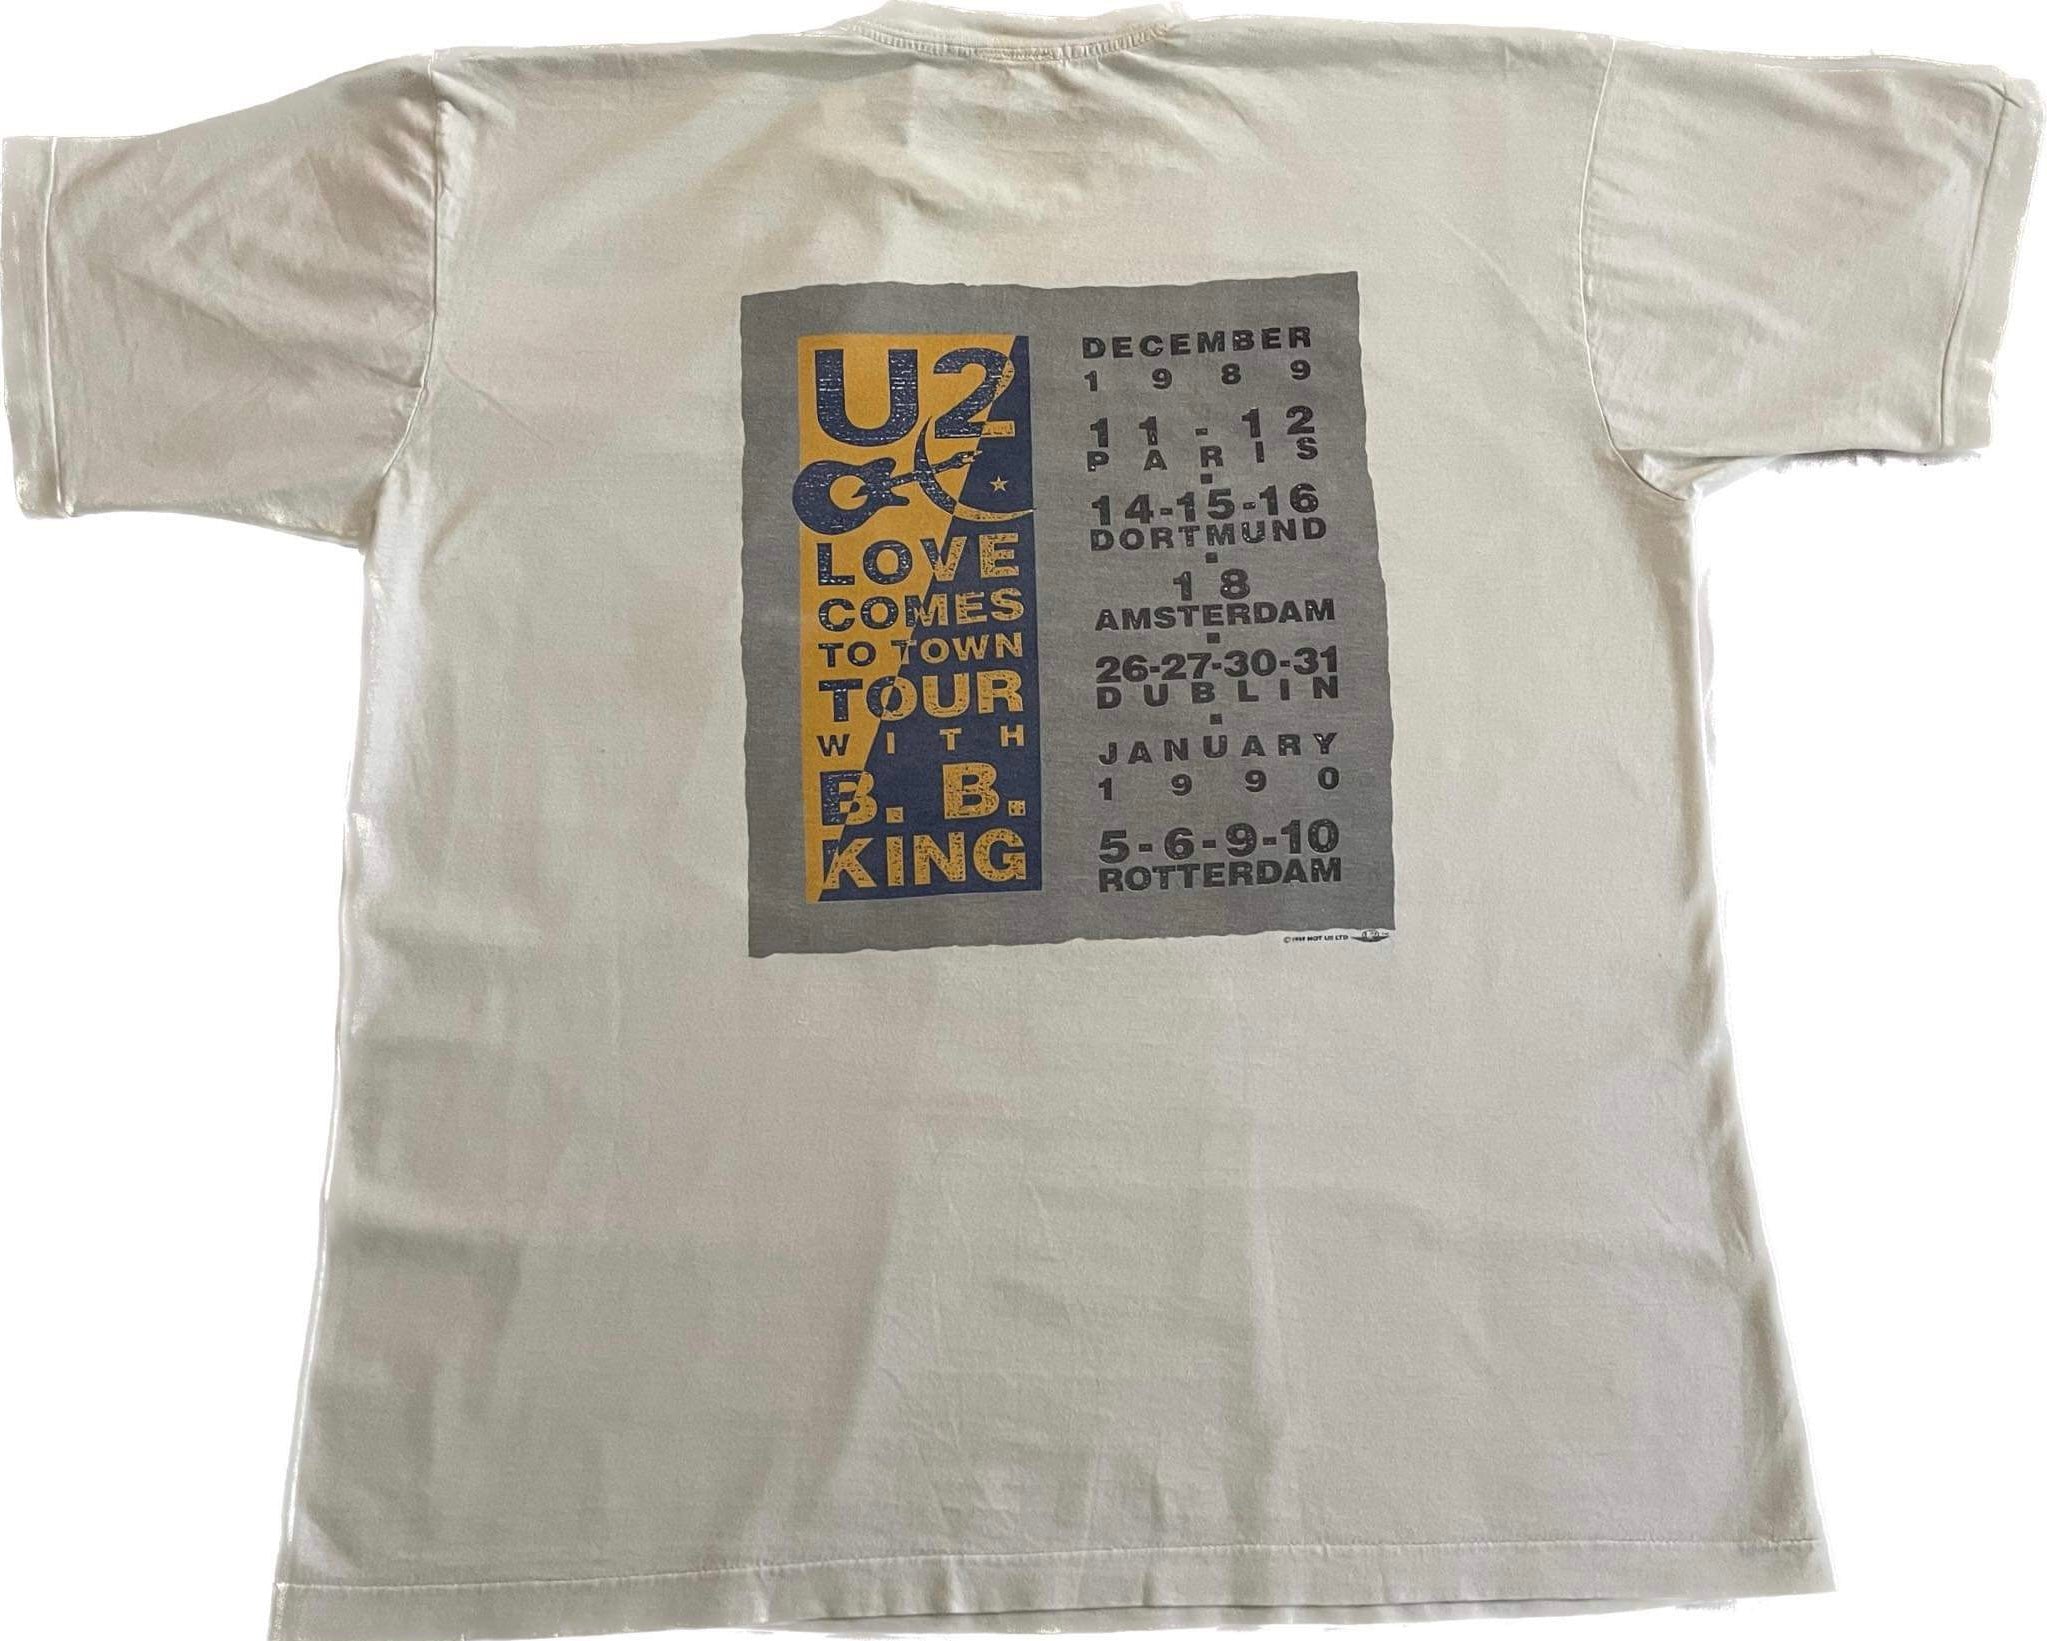 U2 - Love Comes To Town European Tour 1989 - Original Vintage t 